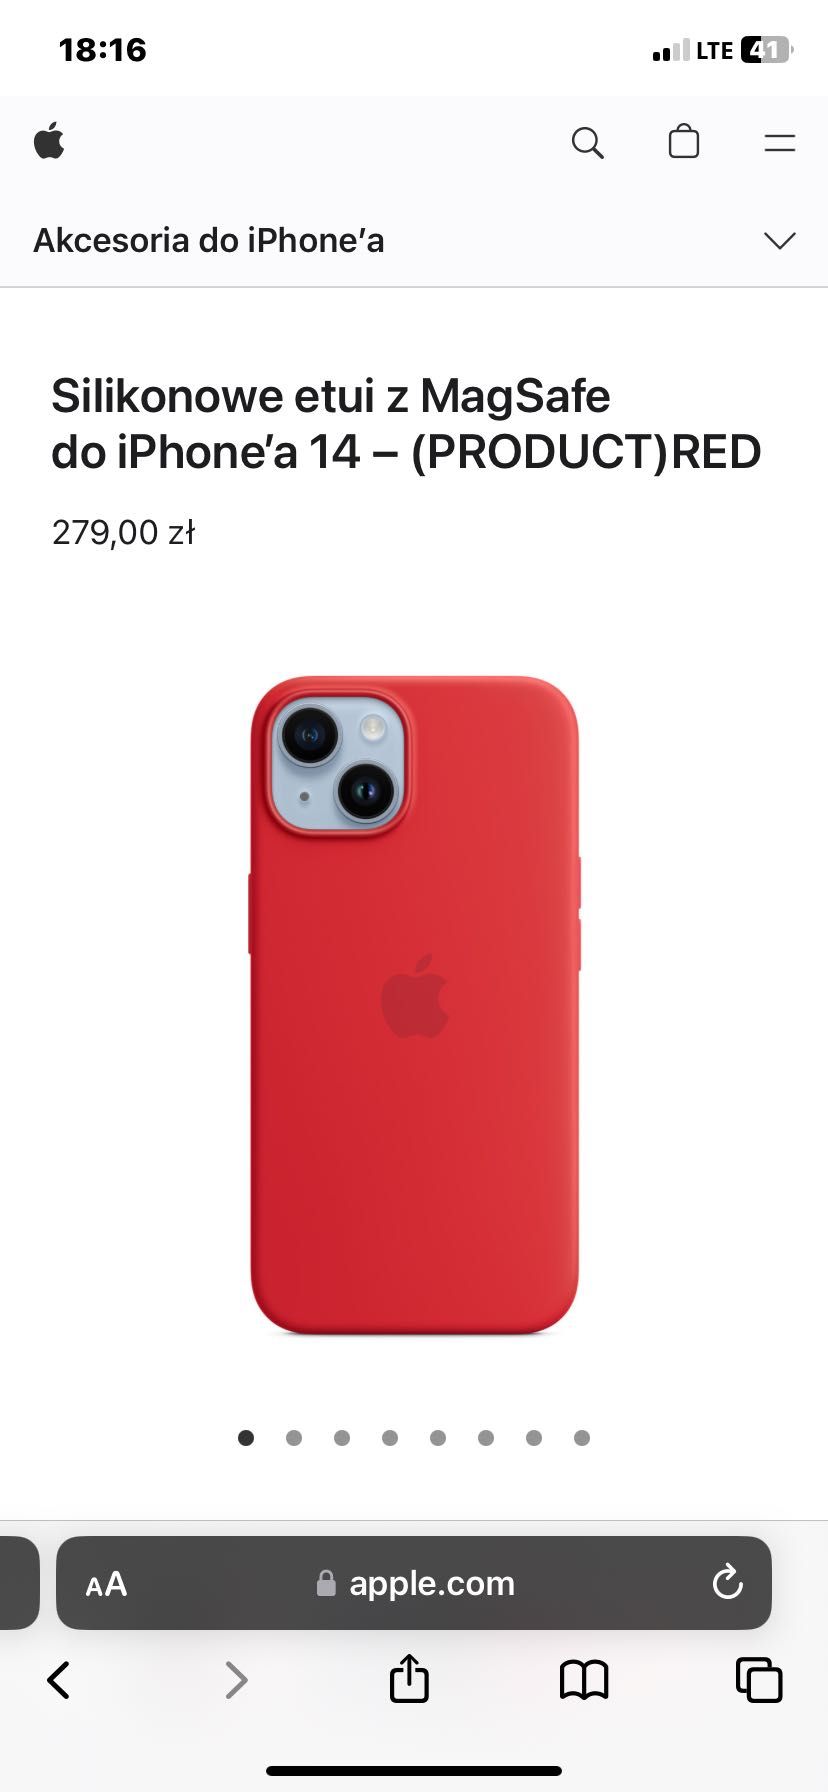 Etui case opakowanie do iPhone 14 czerwone nowe silikonowe MagSafe app